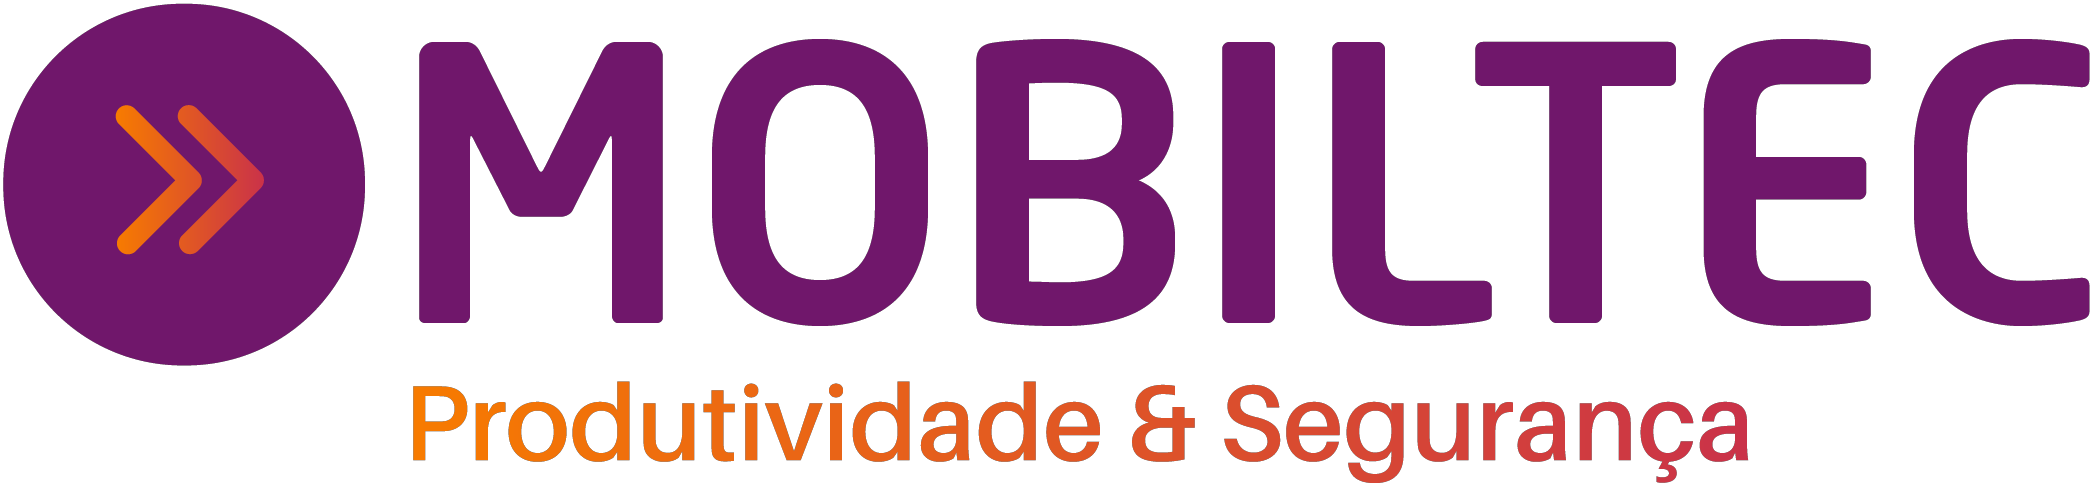 Logo mobiltec